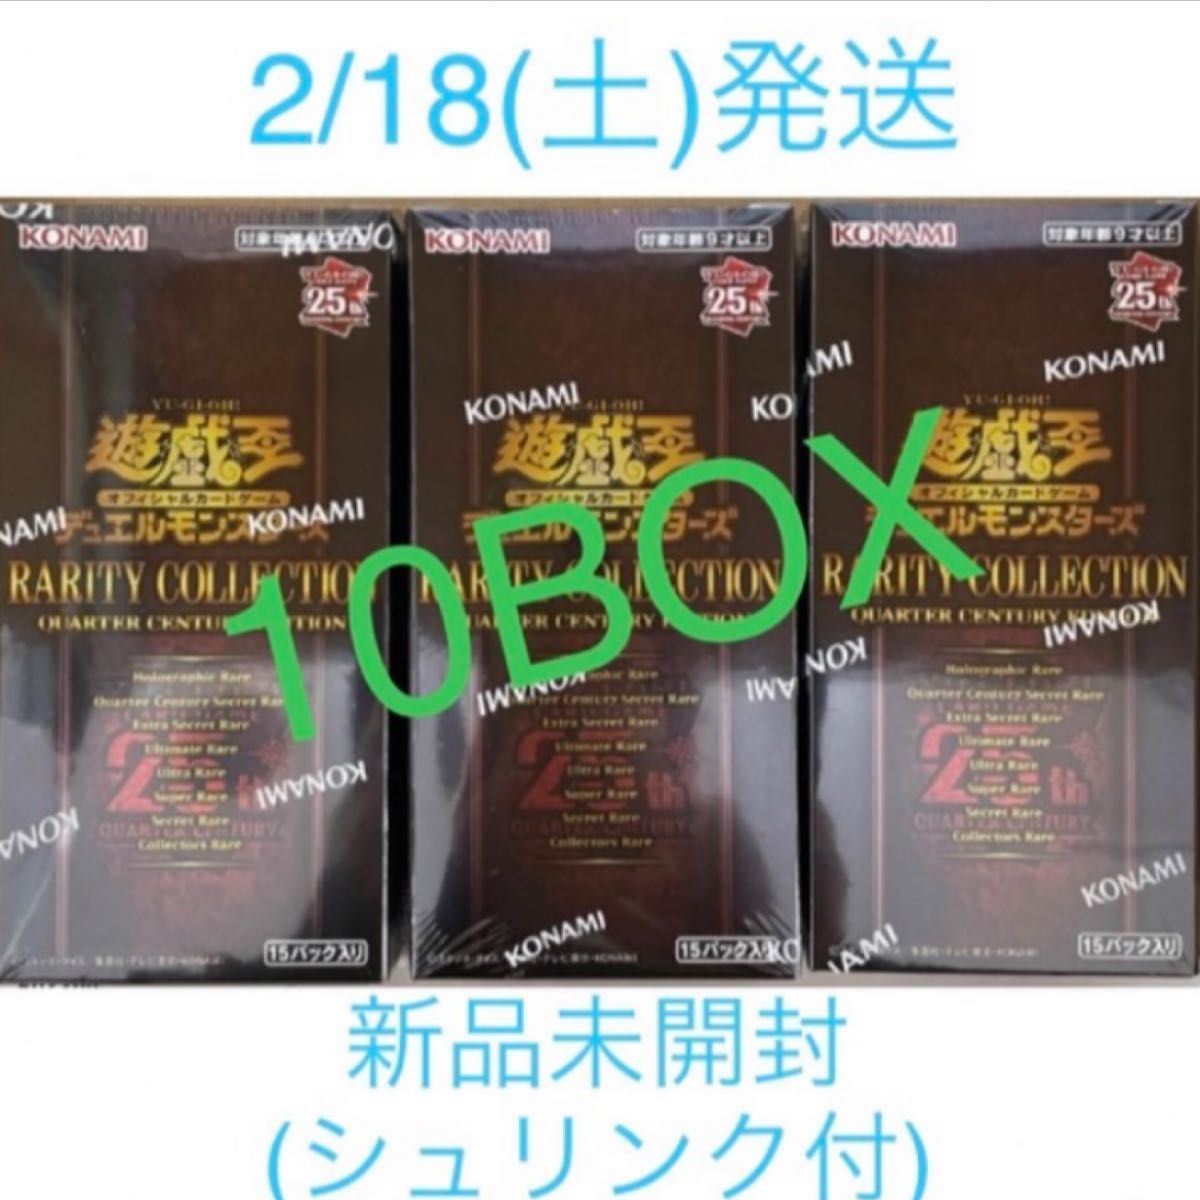 遊戯王 レアリティコレクション 10BOX 新品未開封 シュリンク付き 